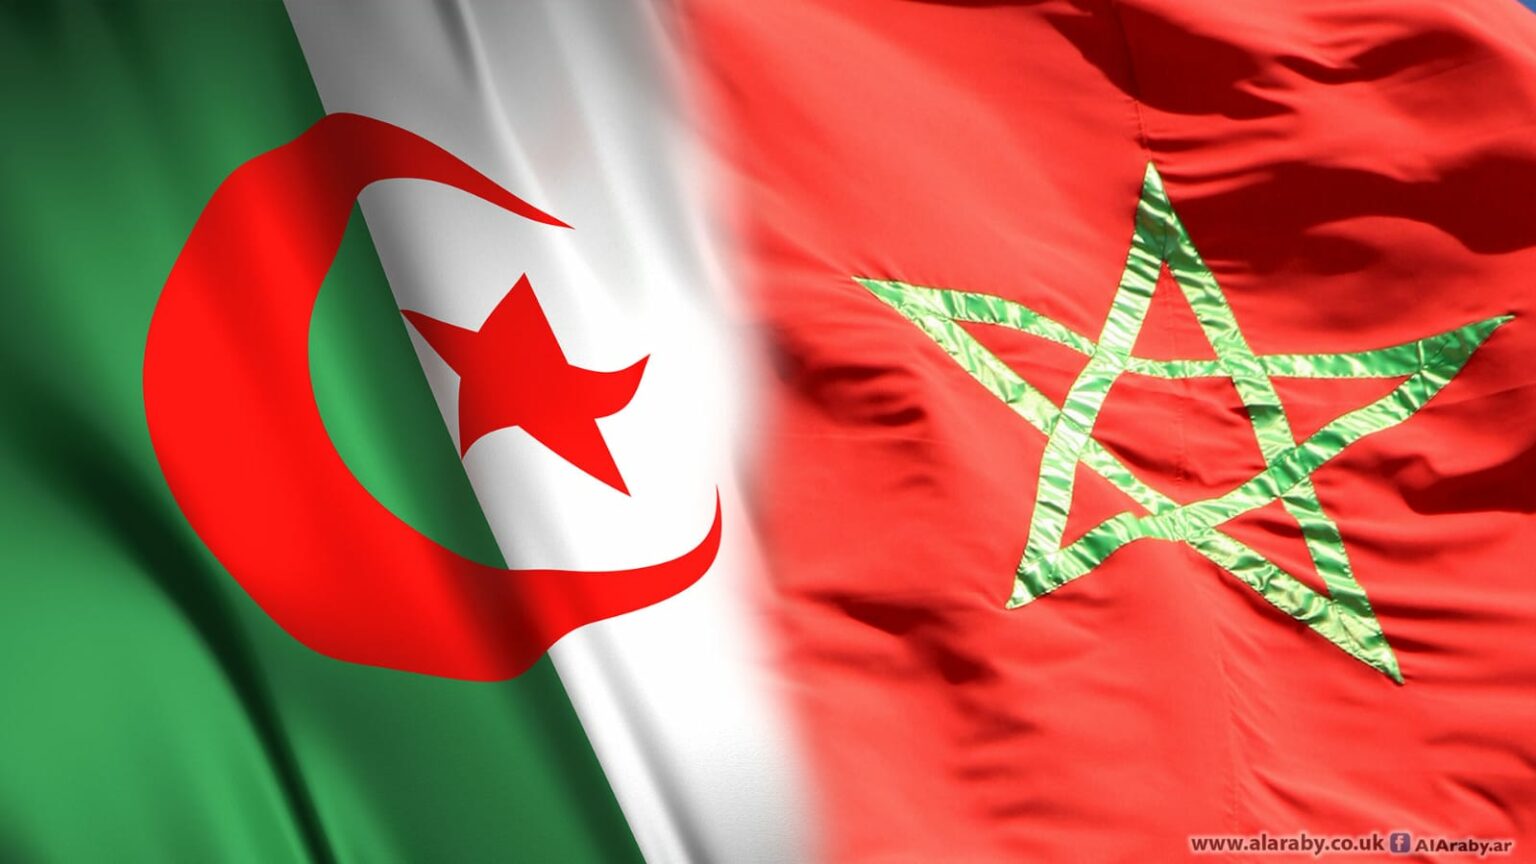 الجزائر تٌصِّرٌ على توجيه اتهامات جديدة للمغرب